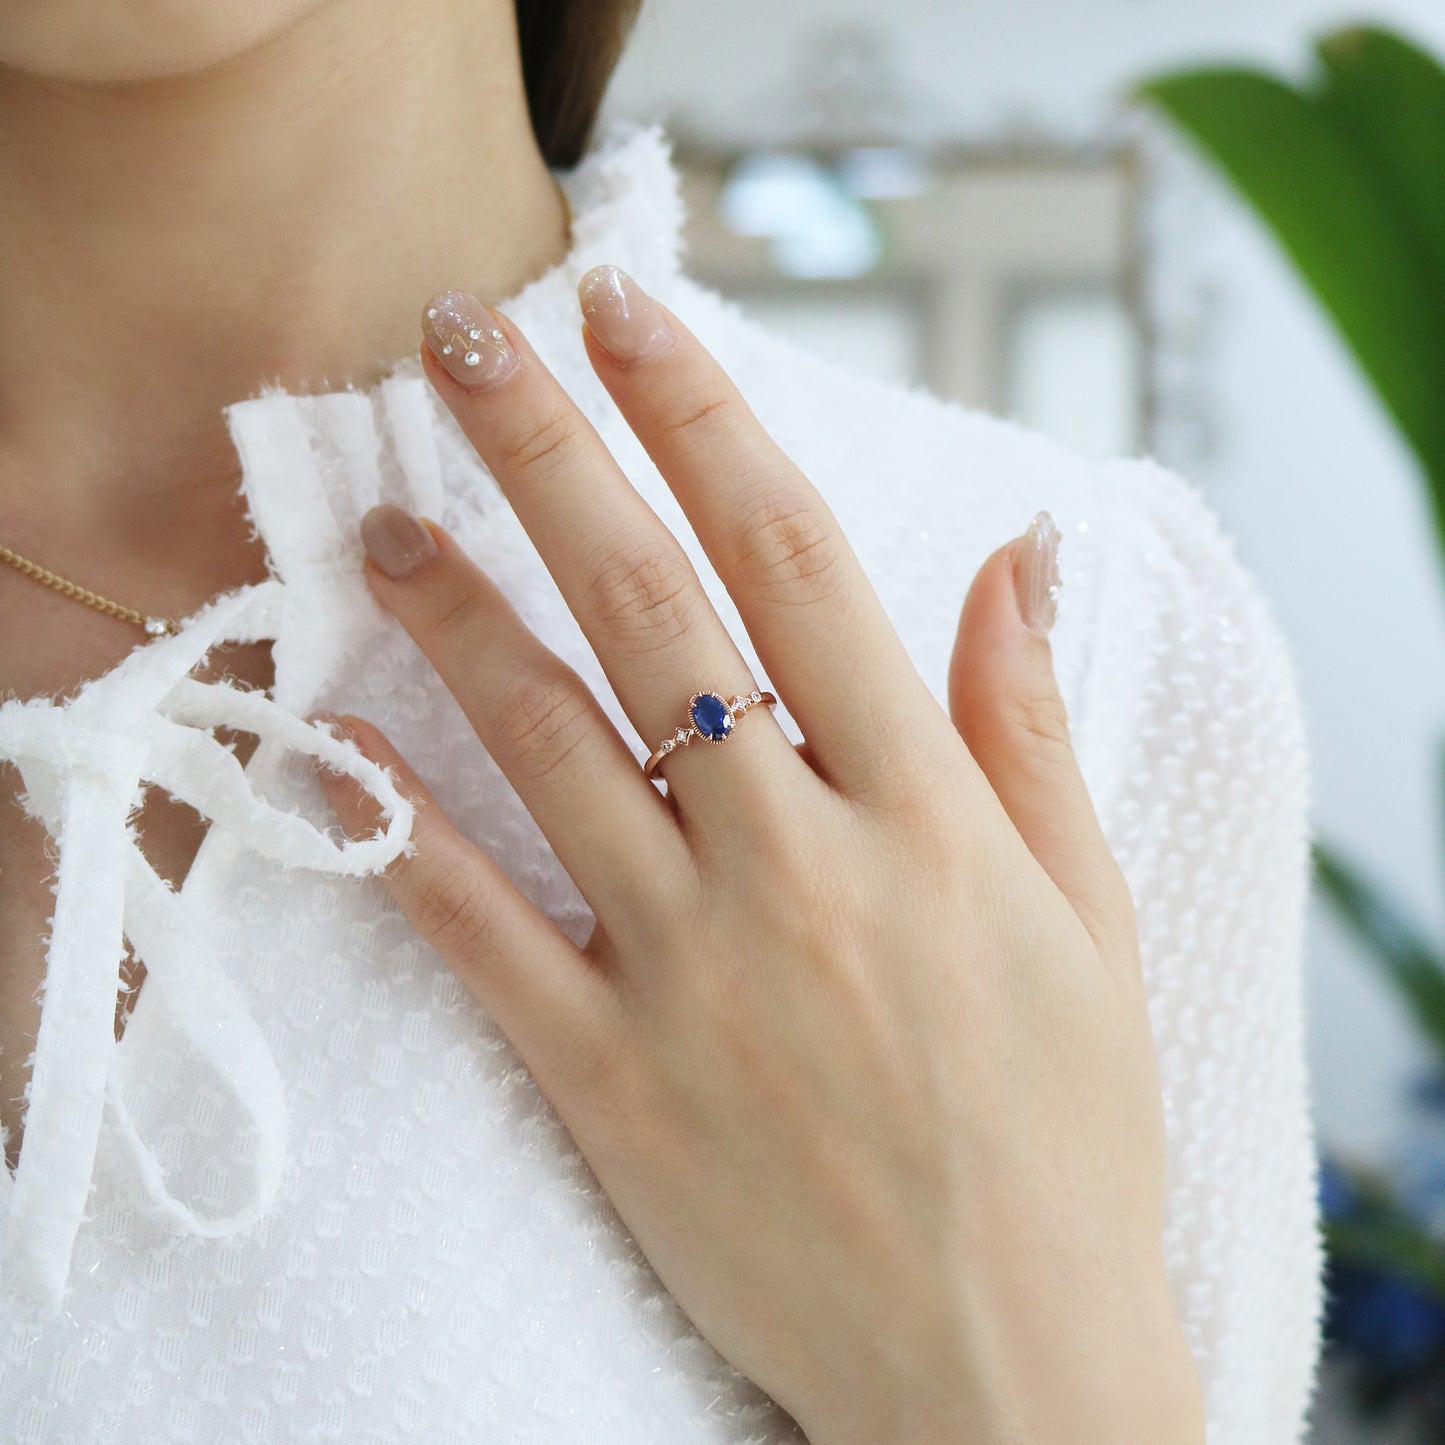 復古藍寶石鑽石戒指在中指上 Vintage Sapphire Diamond Ring on middle finger